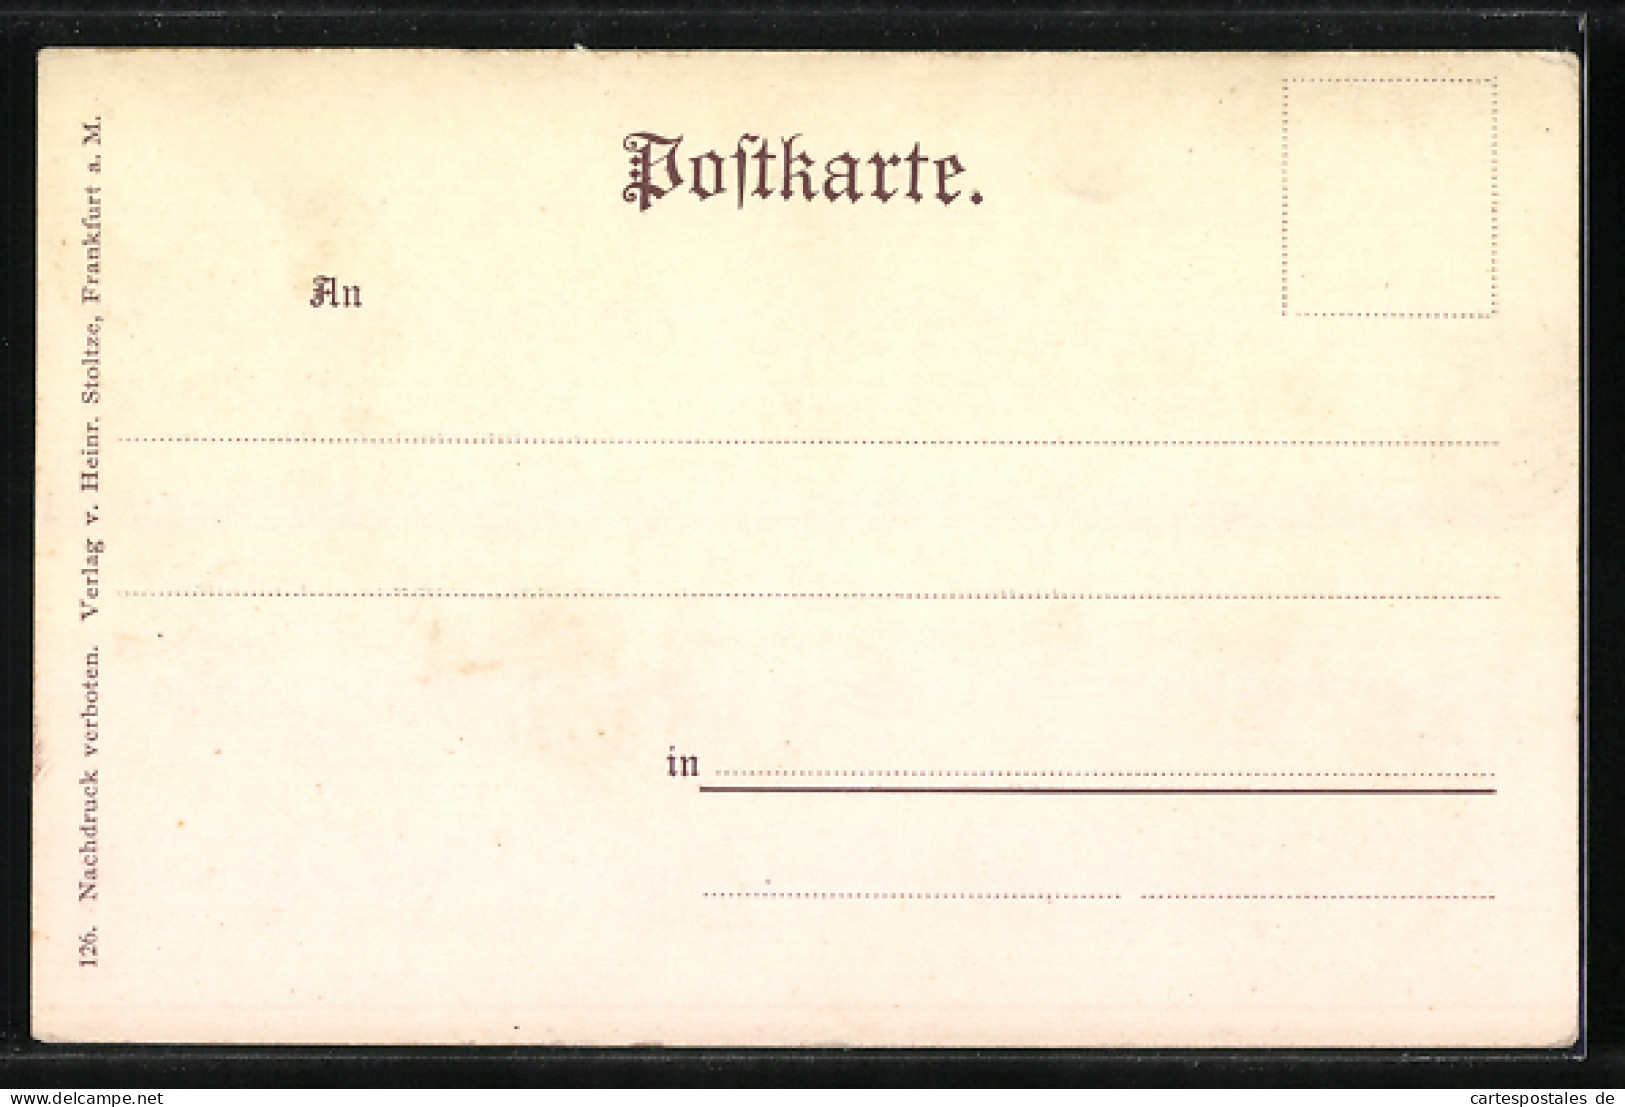 AK Deutsche Dichter Und Schriftsteller, 1800-1900, Freitag, Rückert Und Heine  - Schriftsteller